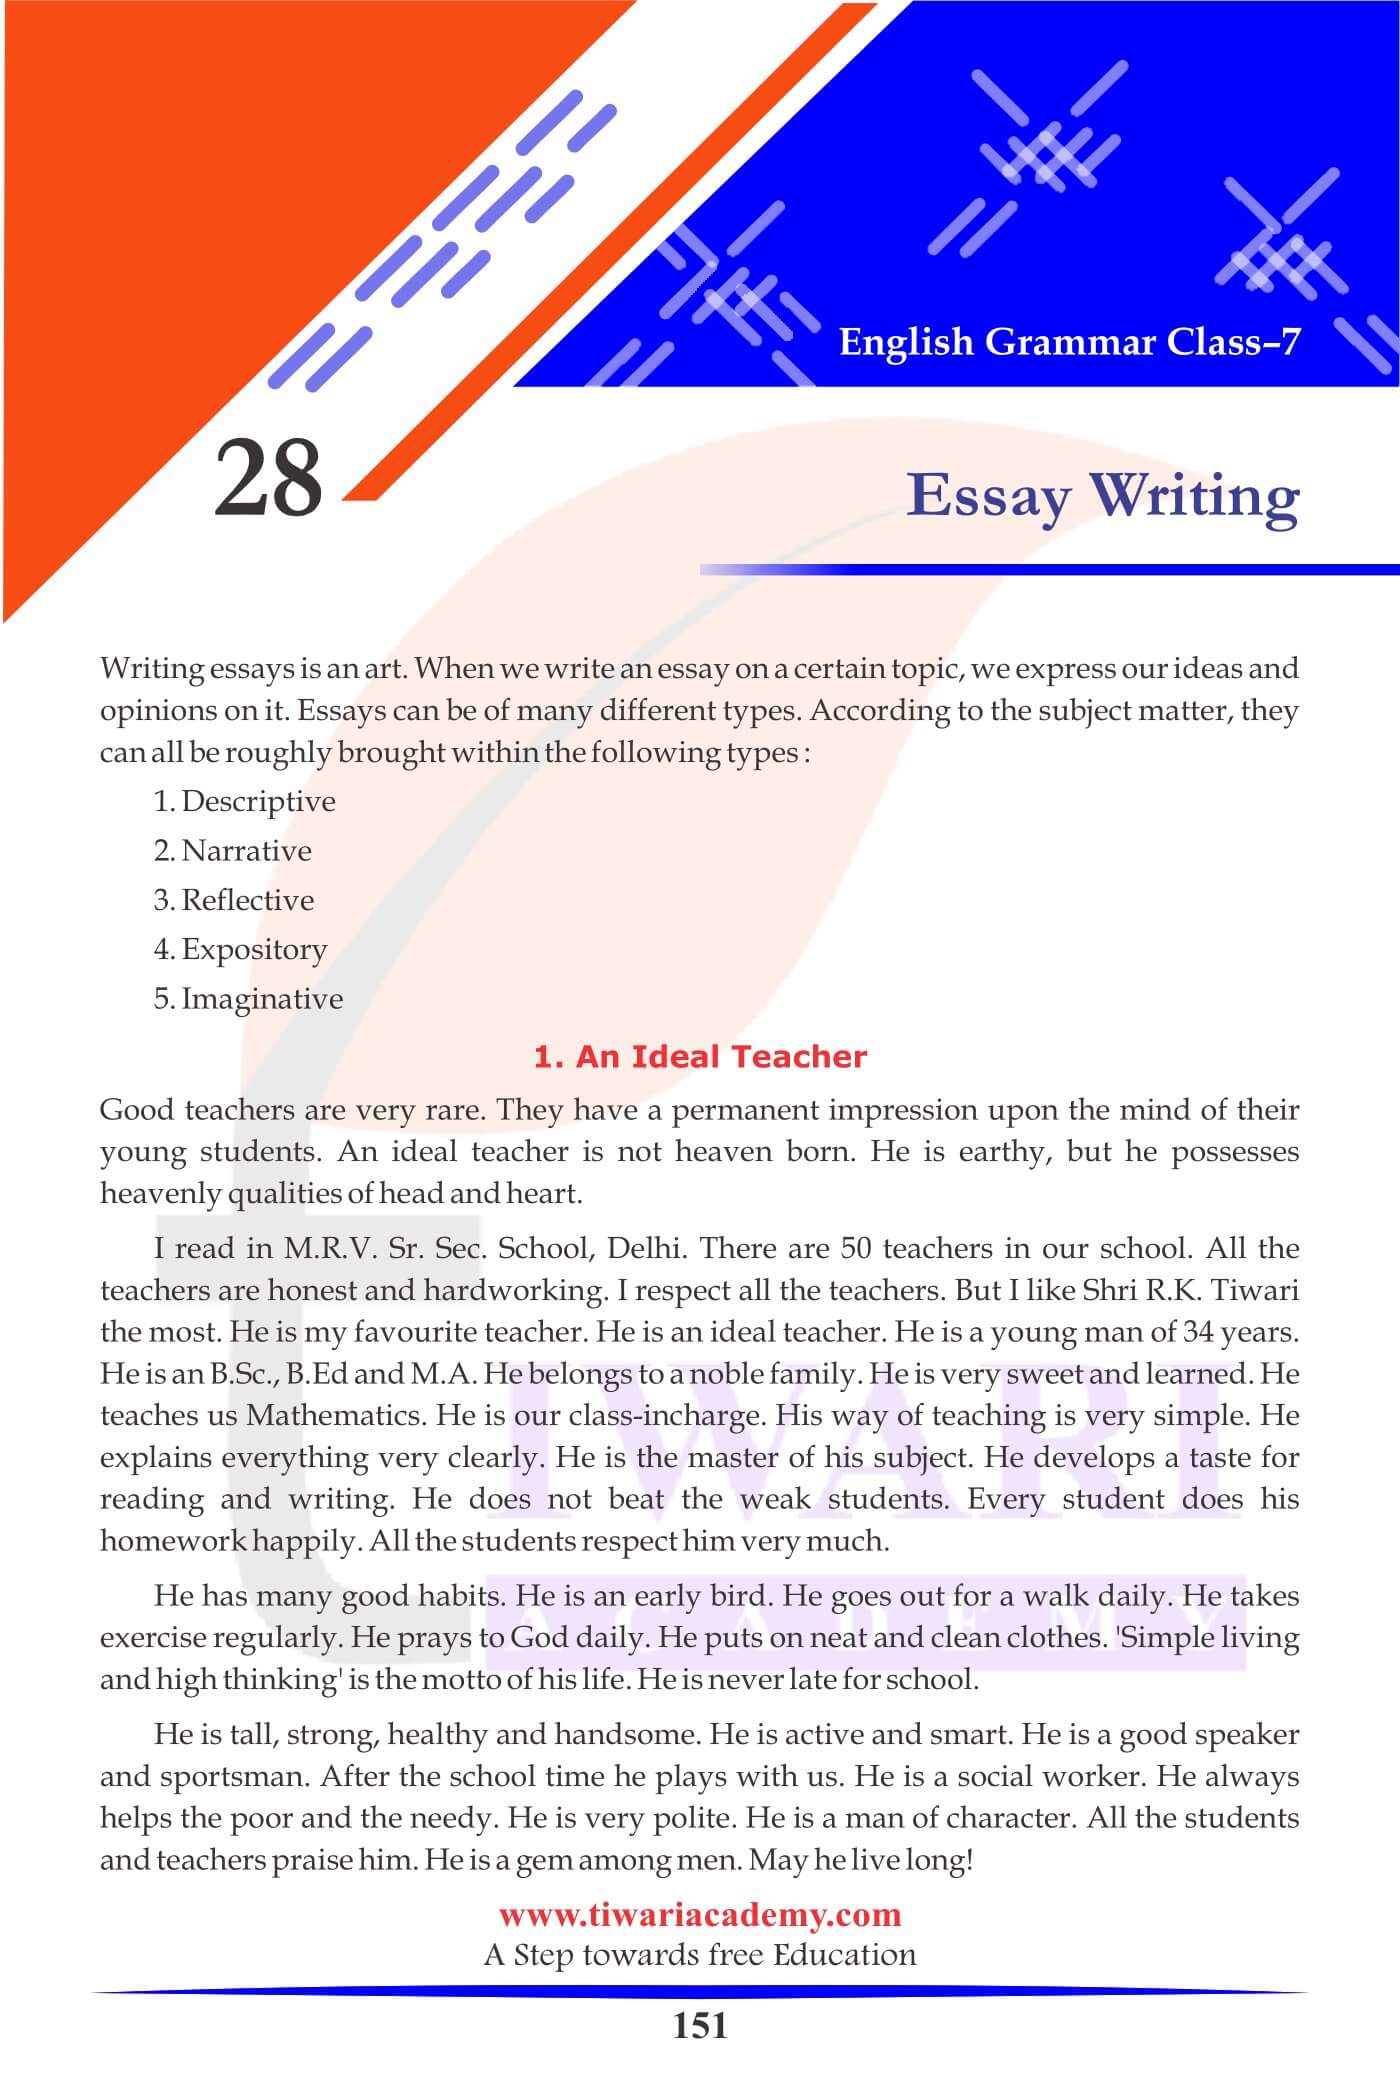 Class 7 Grammar Chapter 28 Essay Writing